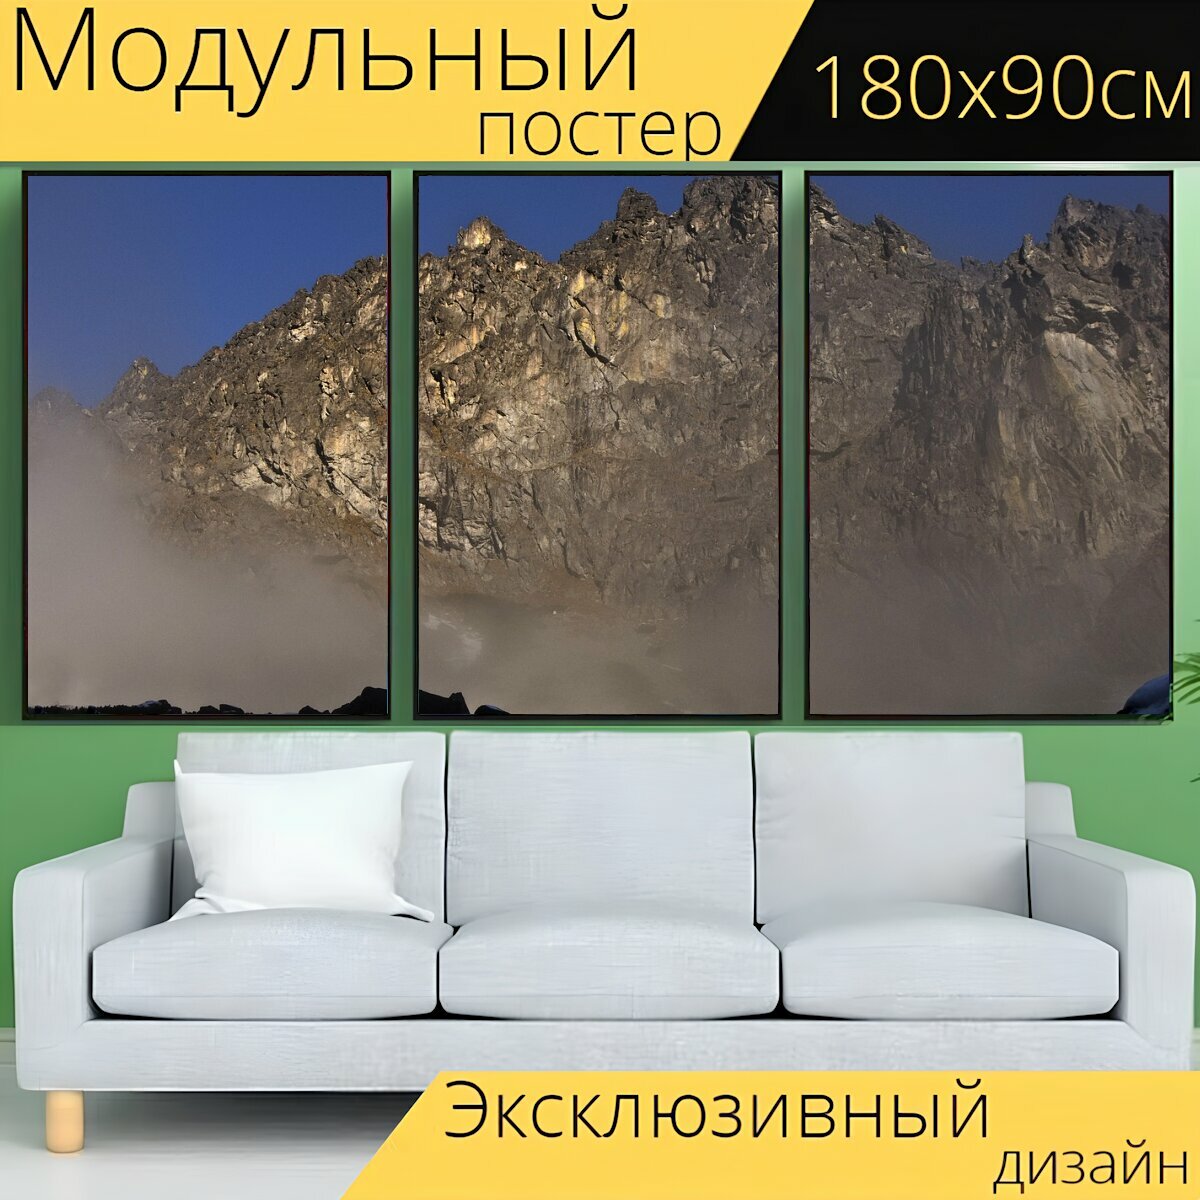 Модульный постер "Гора, клифф, солнечный" 180 x 90 см. для интерьера